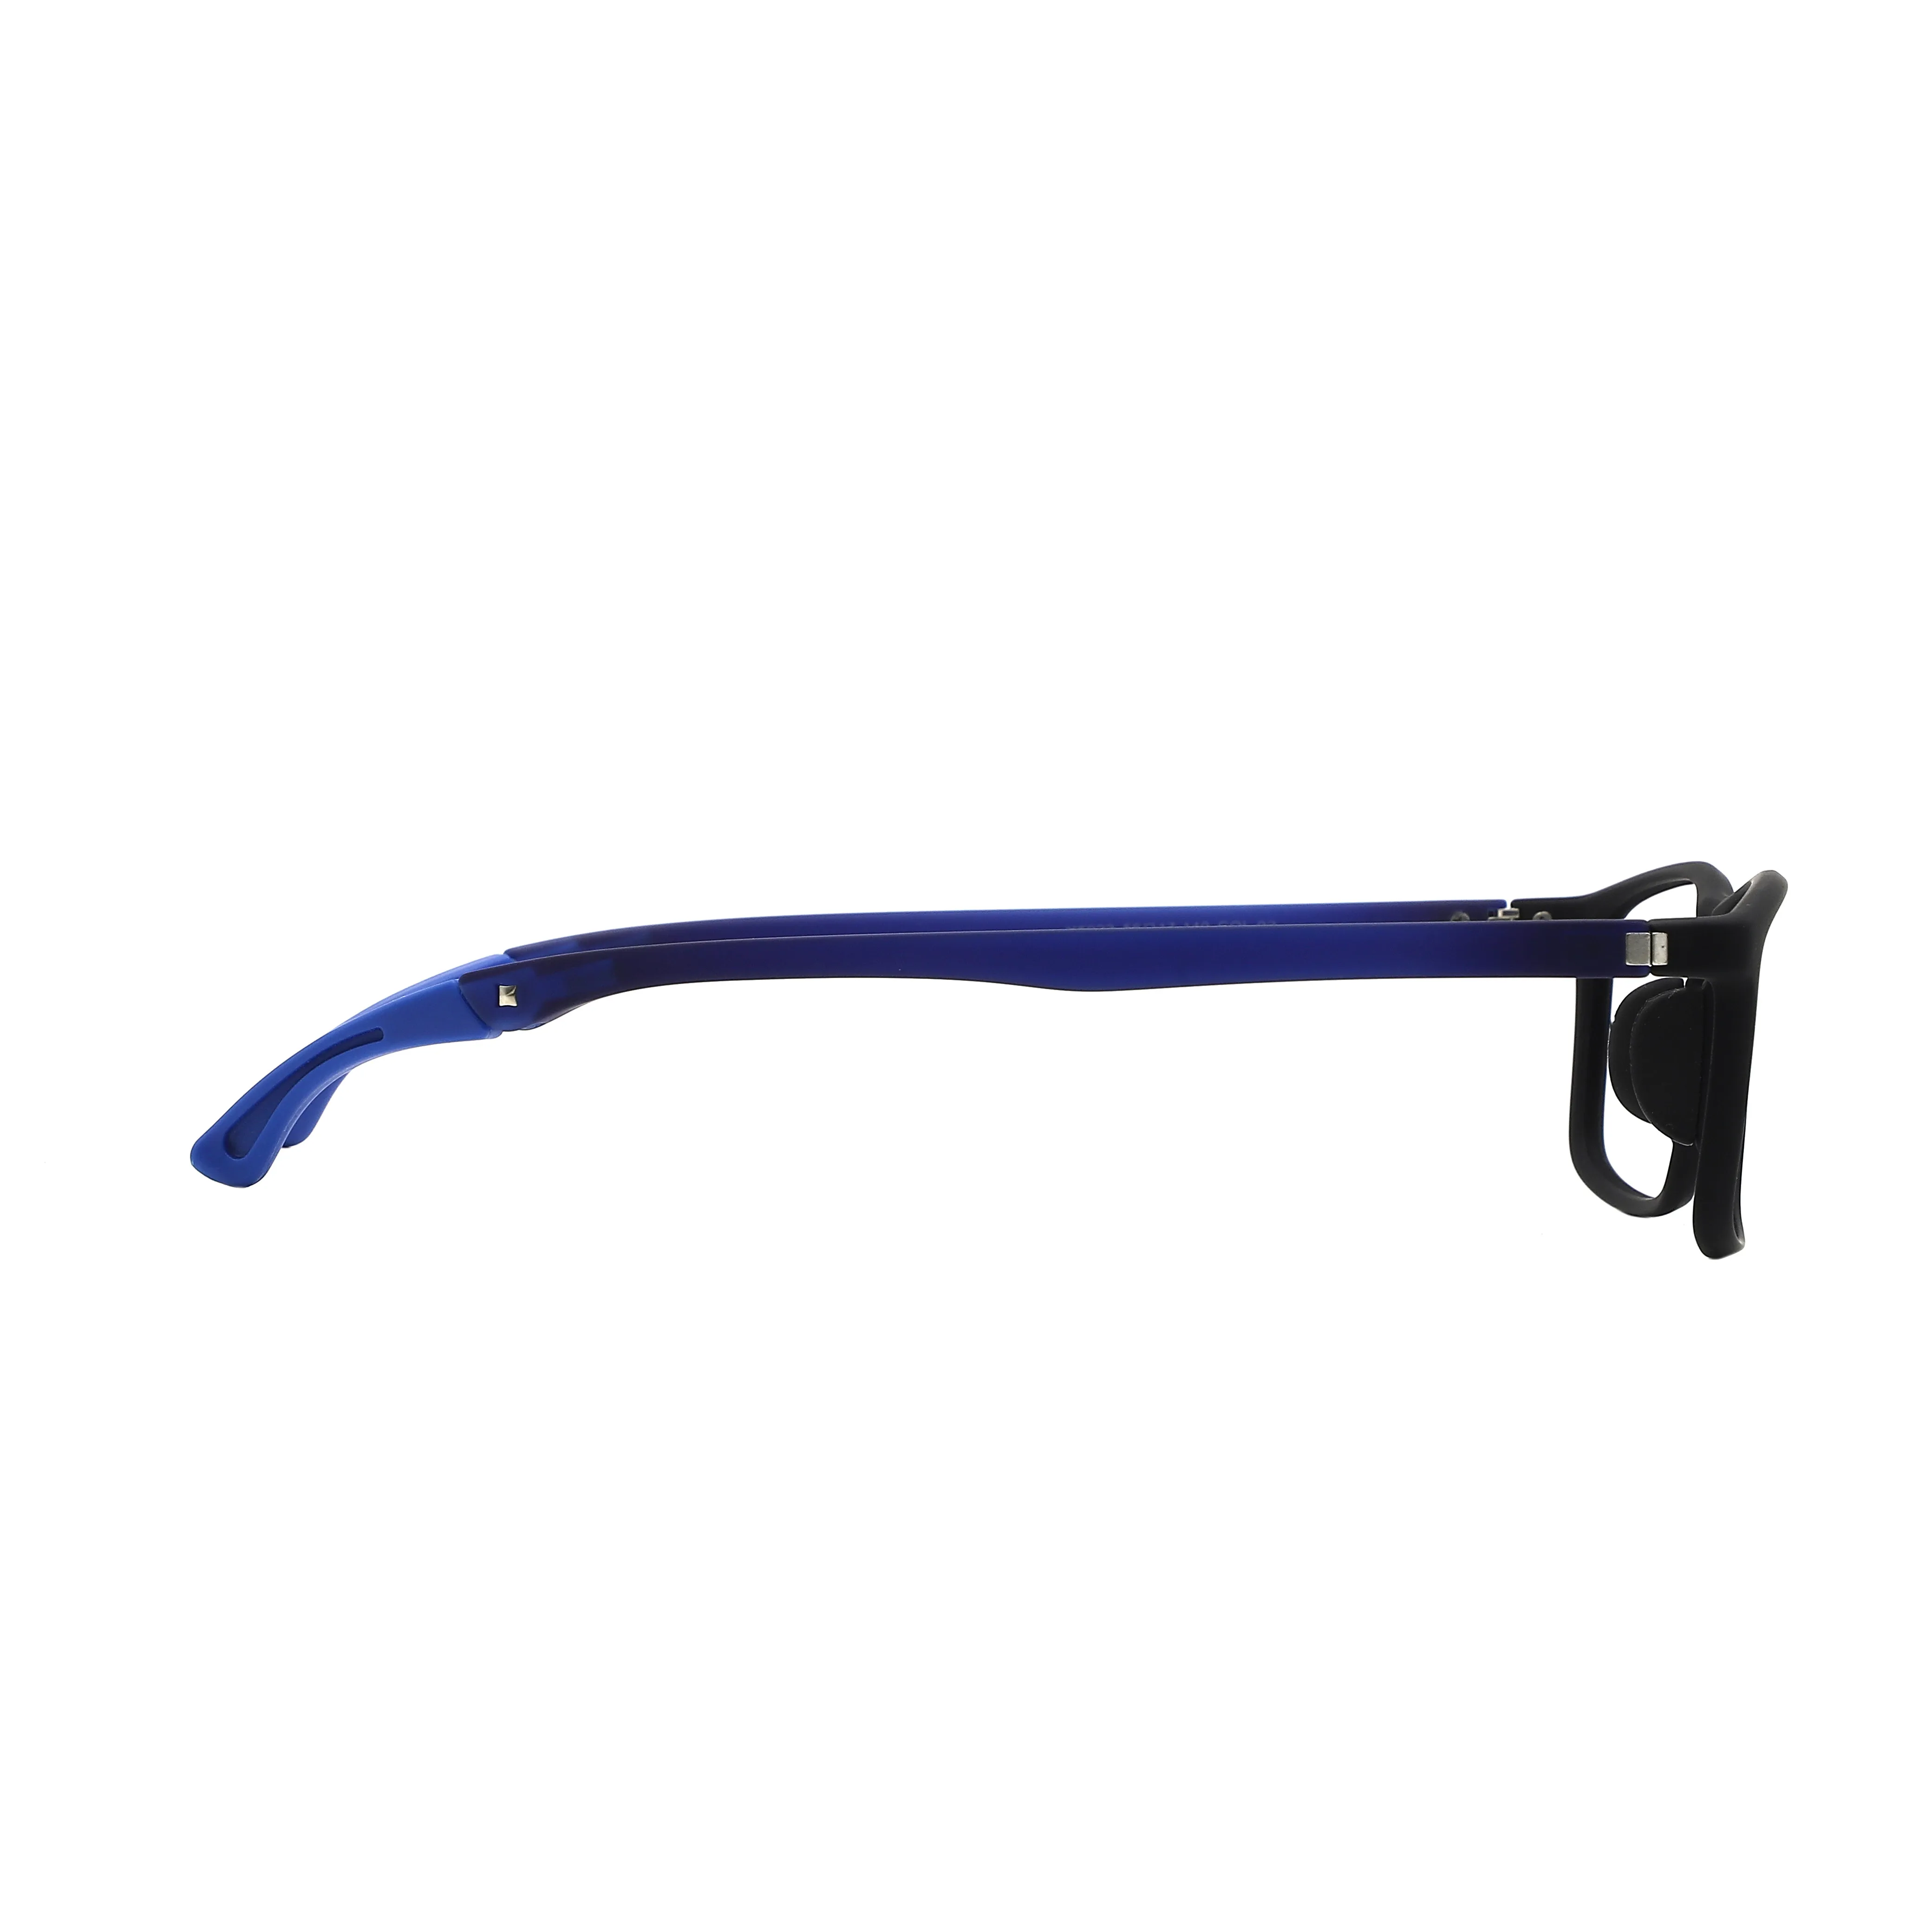 
Manufactory Wholesale flexible glasses frames kids children eyeglasses frame children tr90 optical eyeglasses frame 